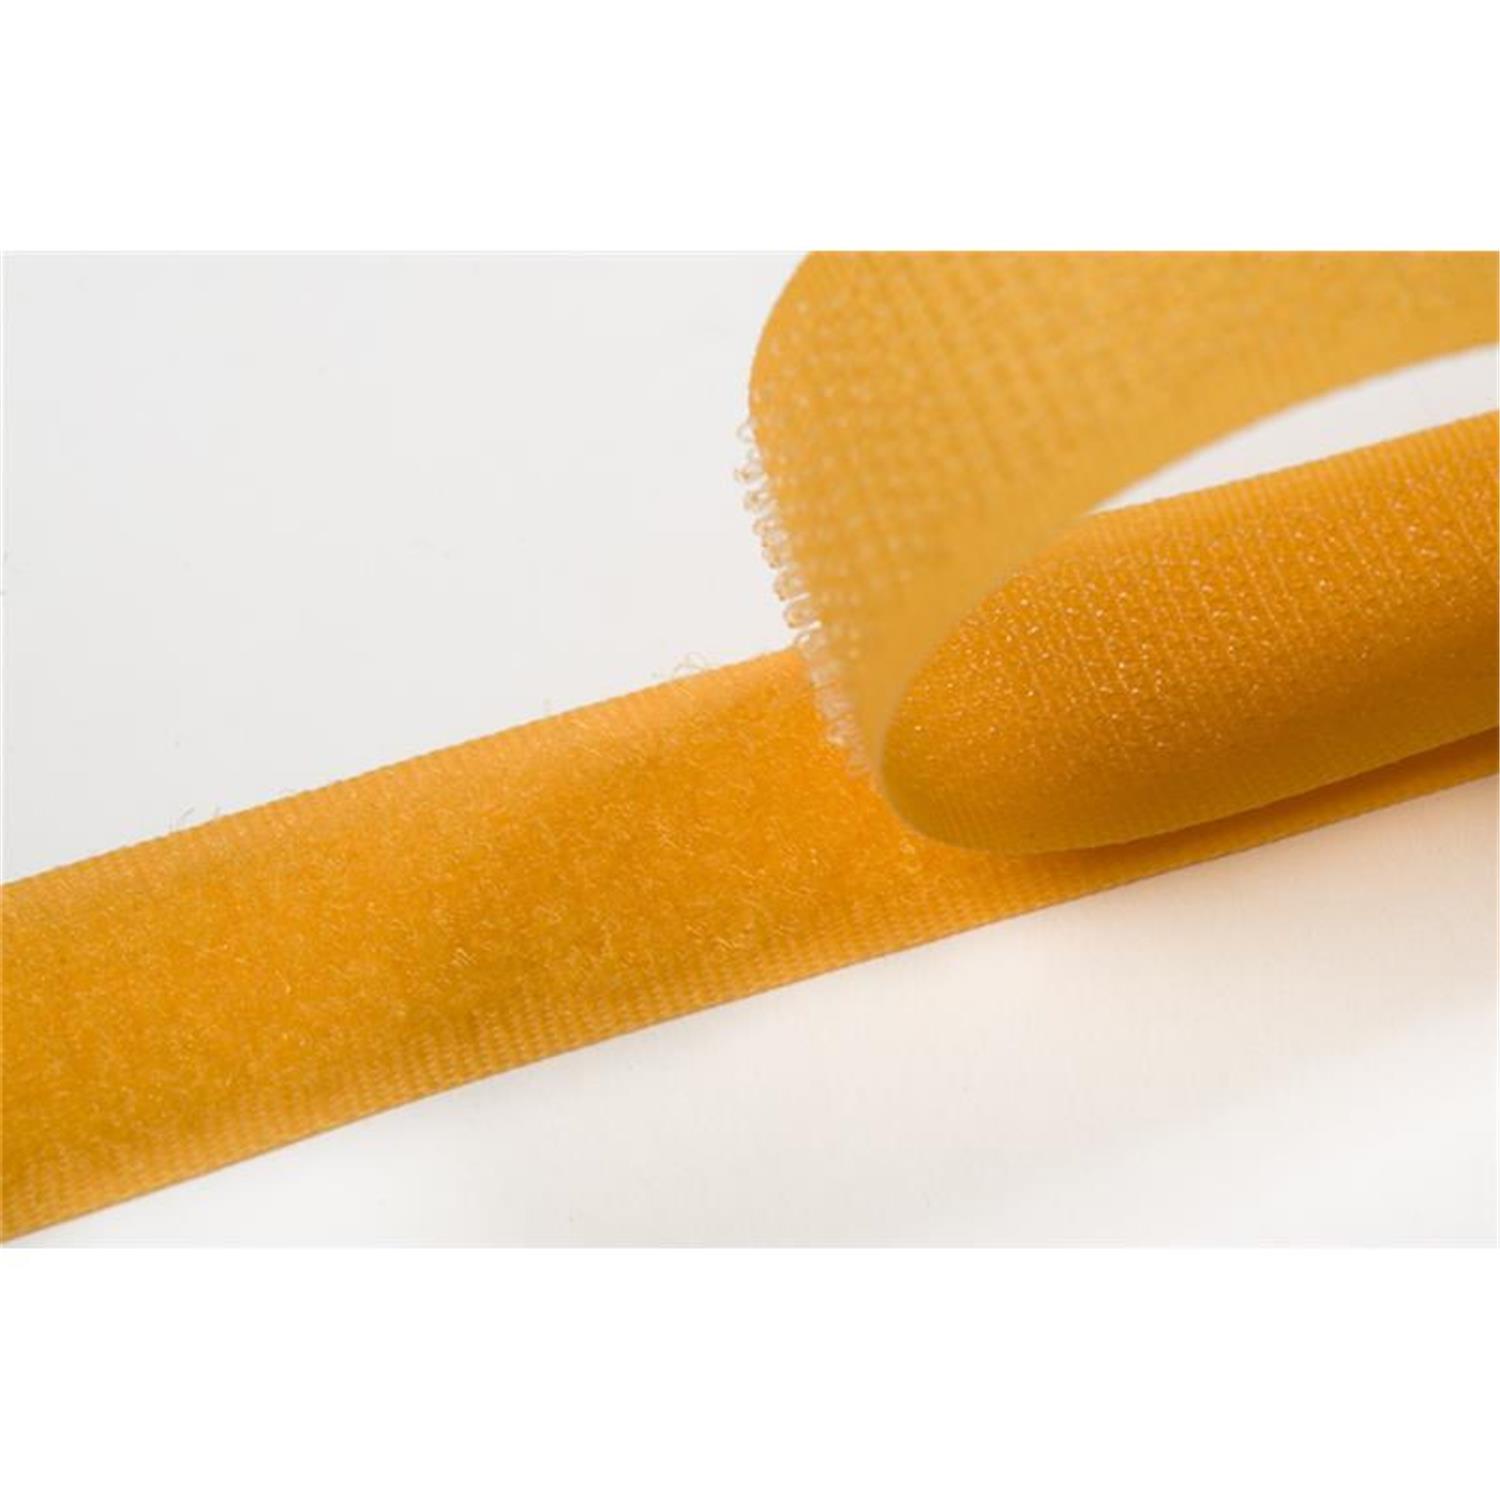 Klettband zum aufnähen, 20 mm, gelb #16 4 Meter